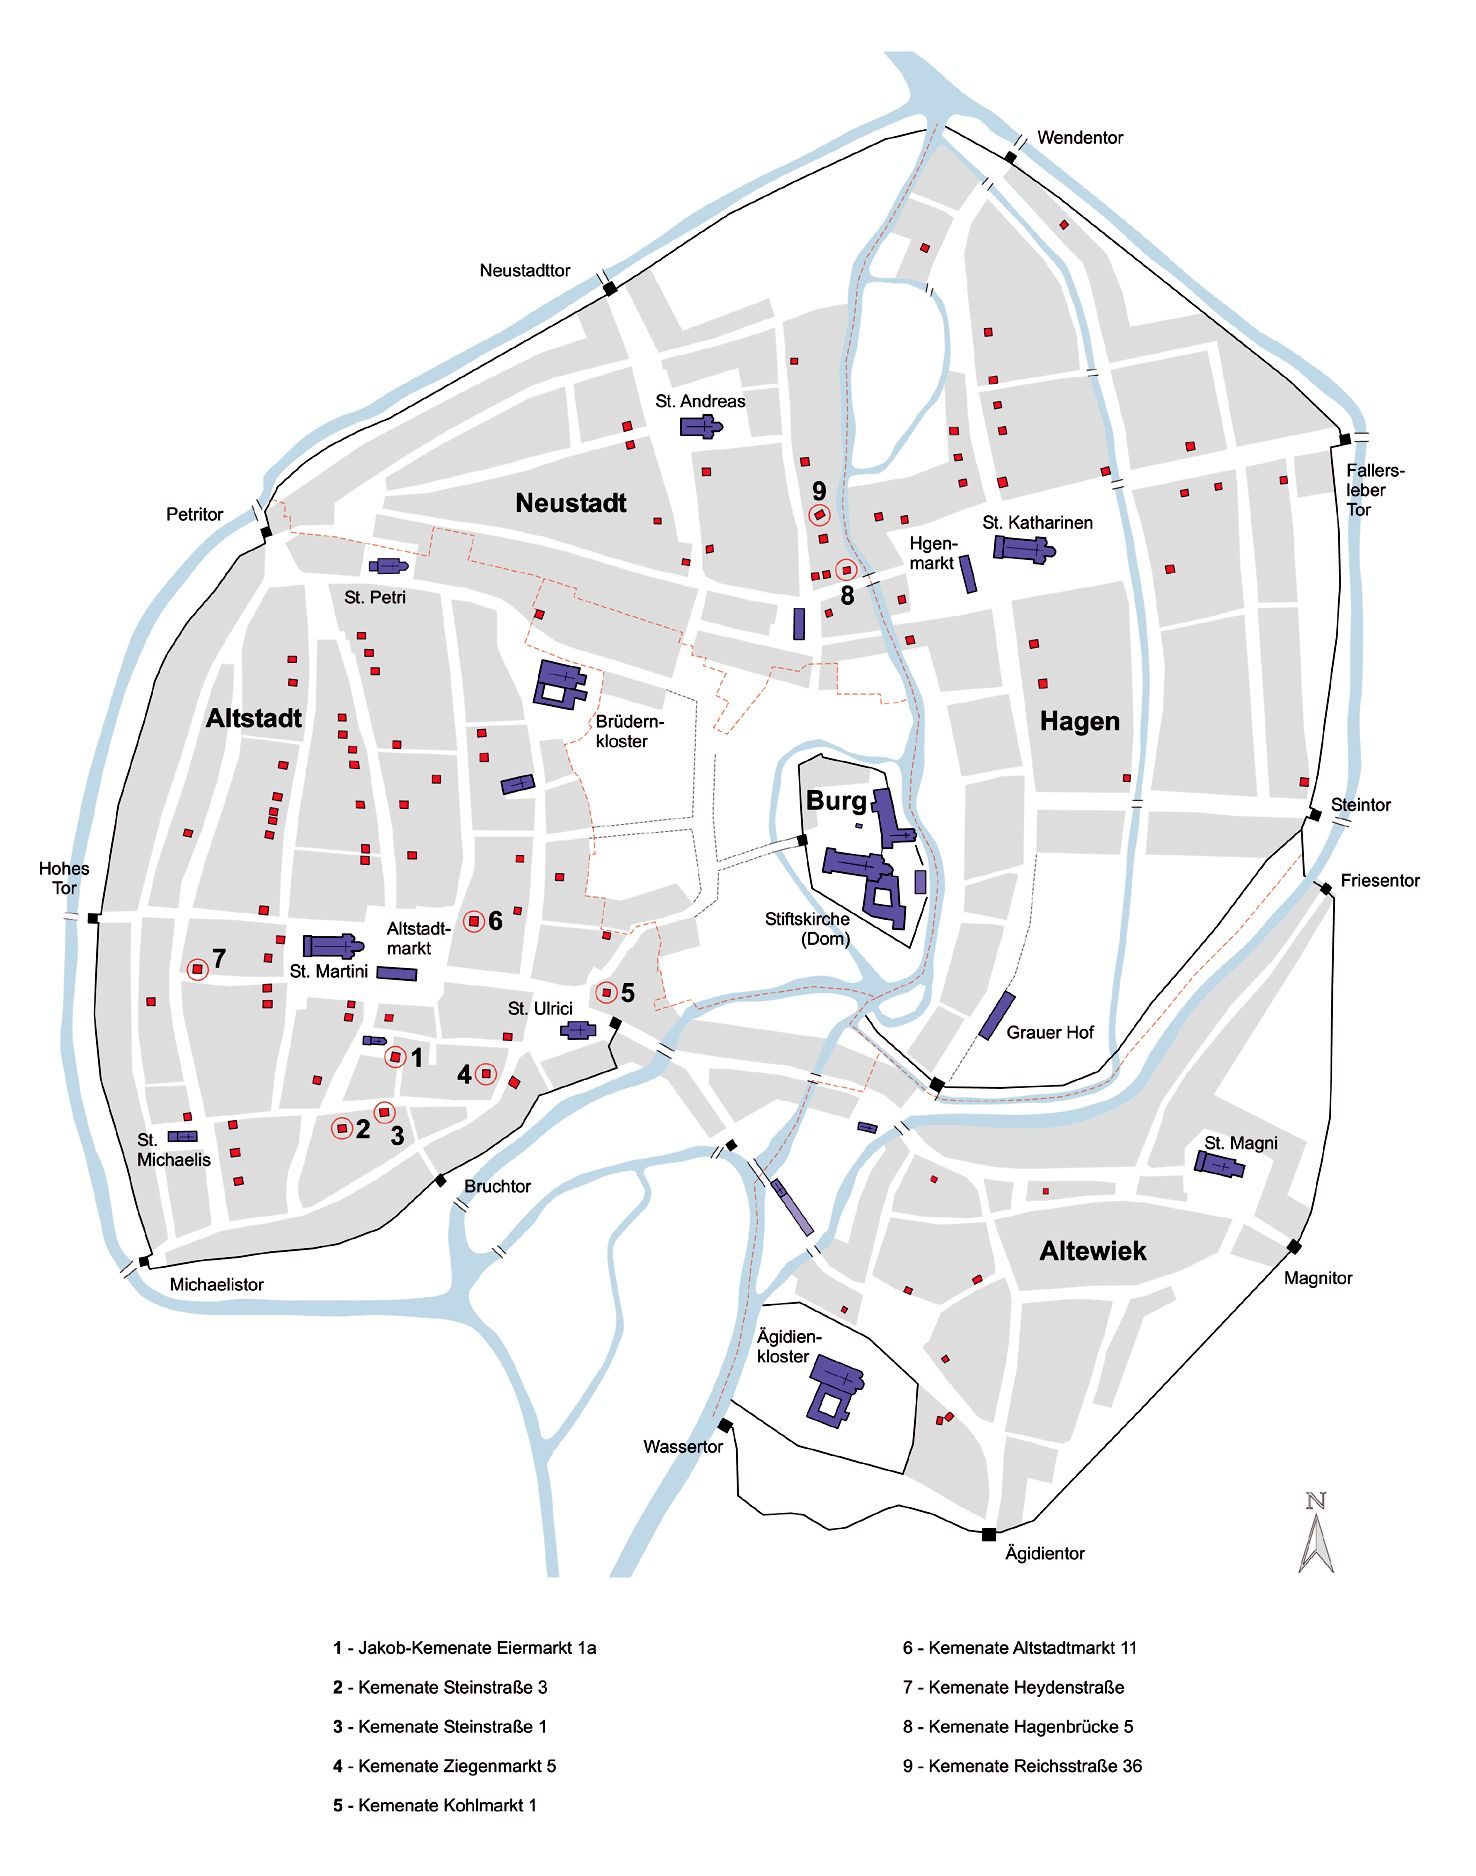 Braunschweig in der 2. Hälfte des 13. Jahrhunderts mit Kartierung der Kemenaten. Die erhaltenen Bauten sind gekennzeichnet. (Zoom on click)